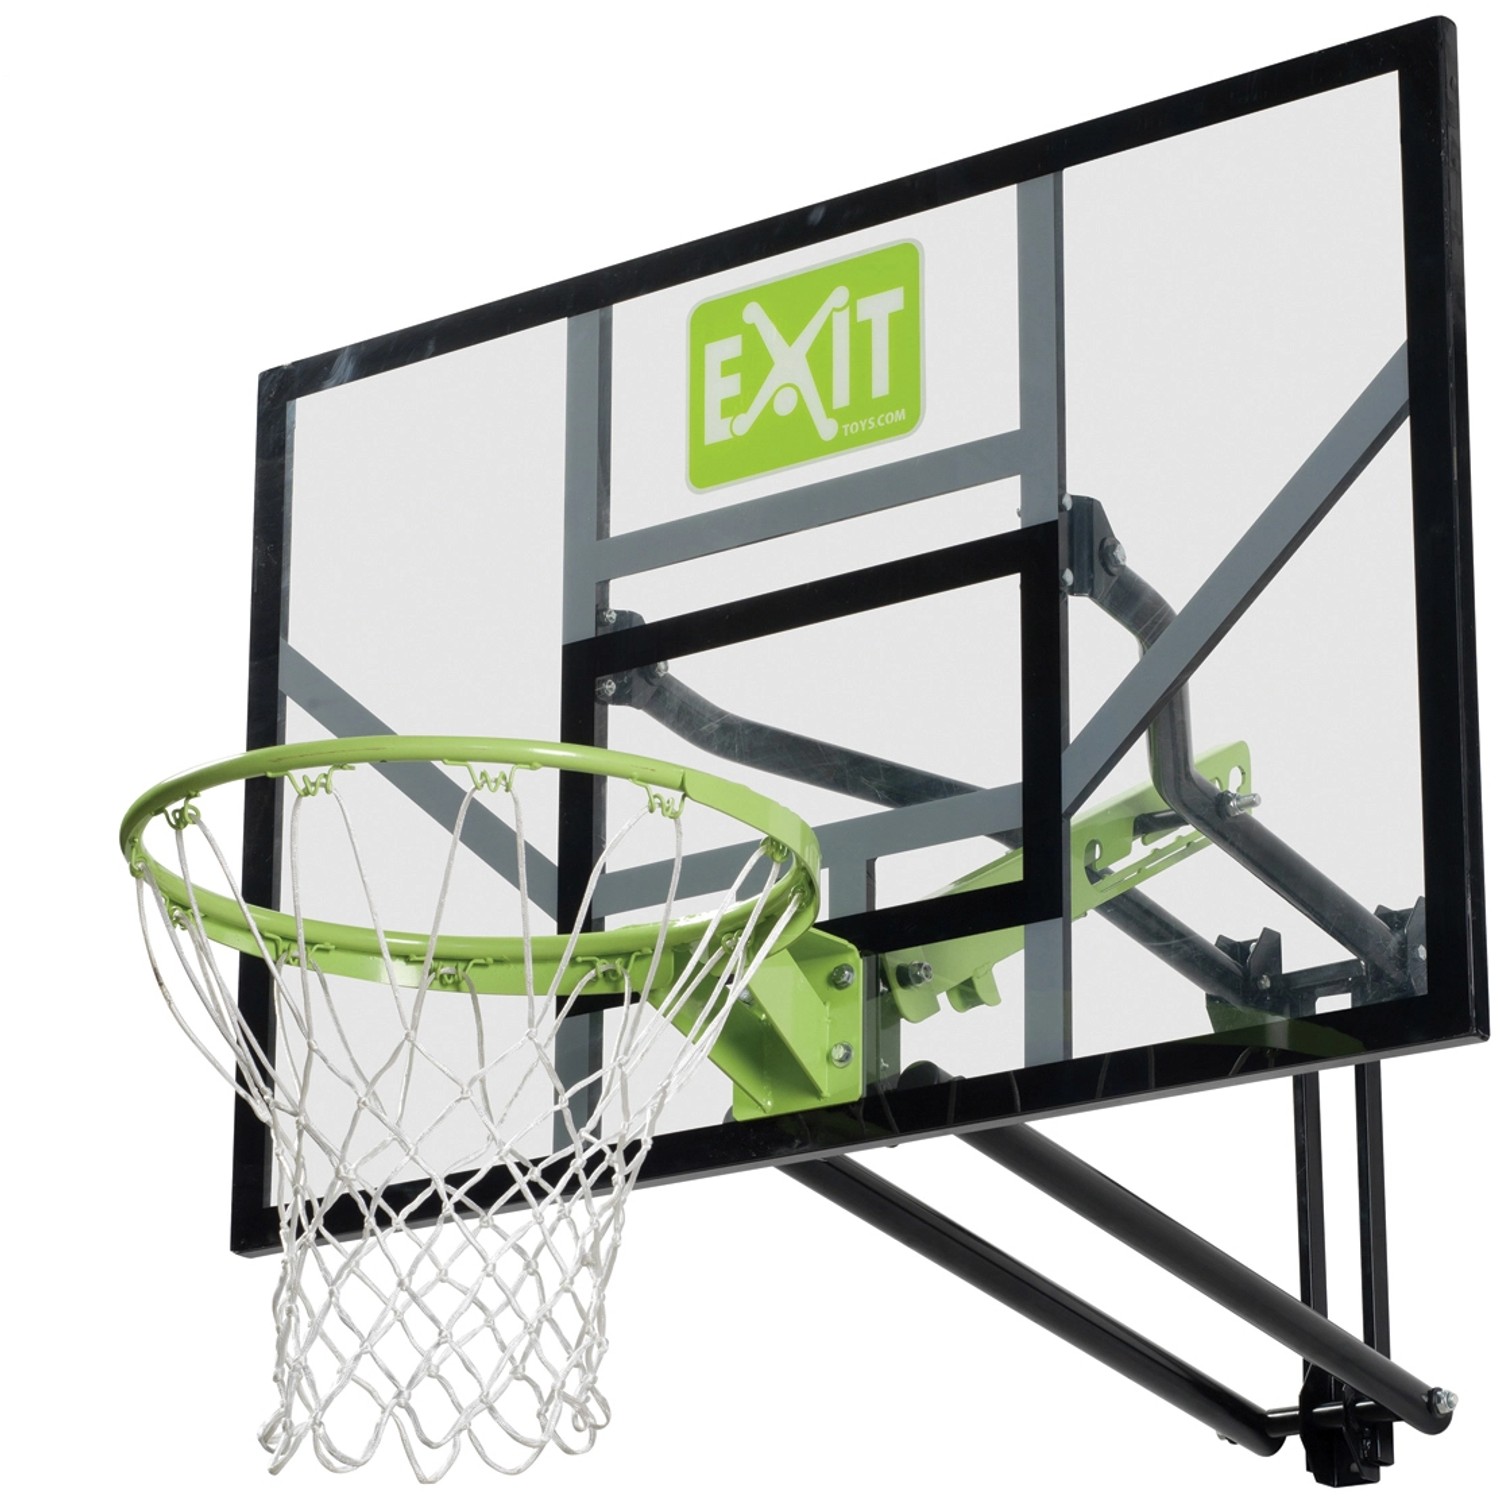 EXIT Galaxy Basketballkorb zur Wandmontage - grün/schwarz von Exit Toys